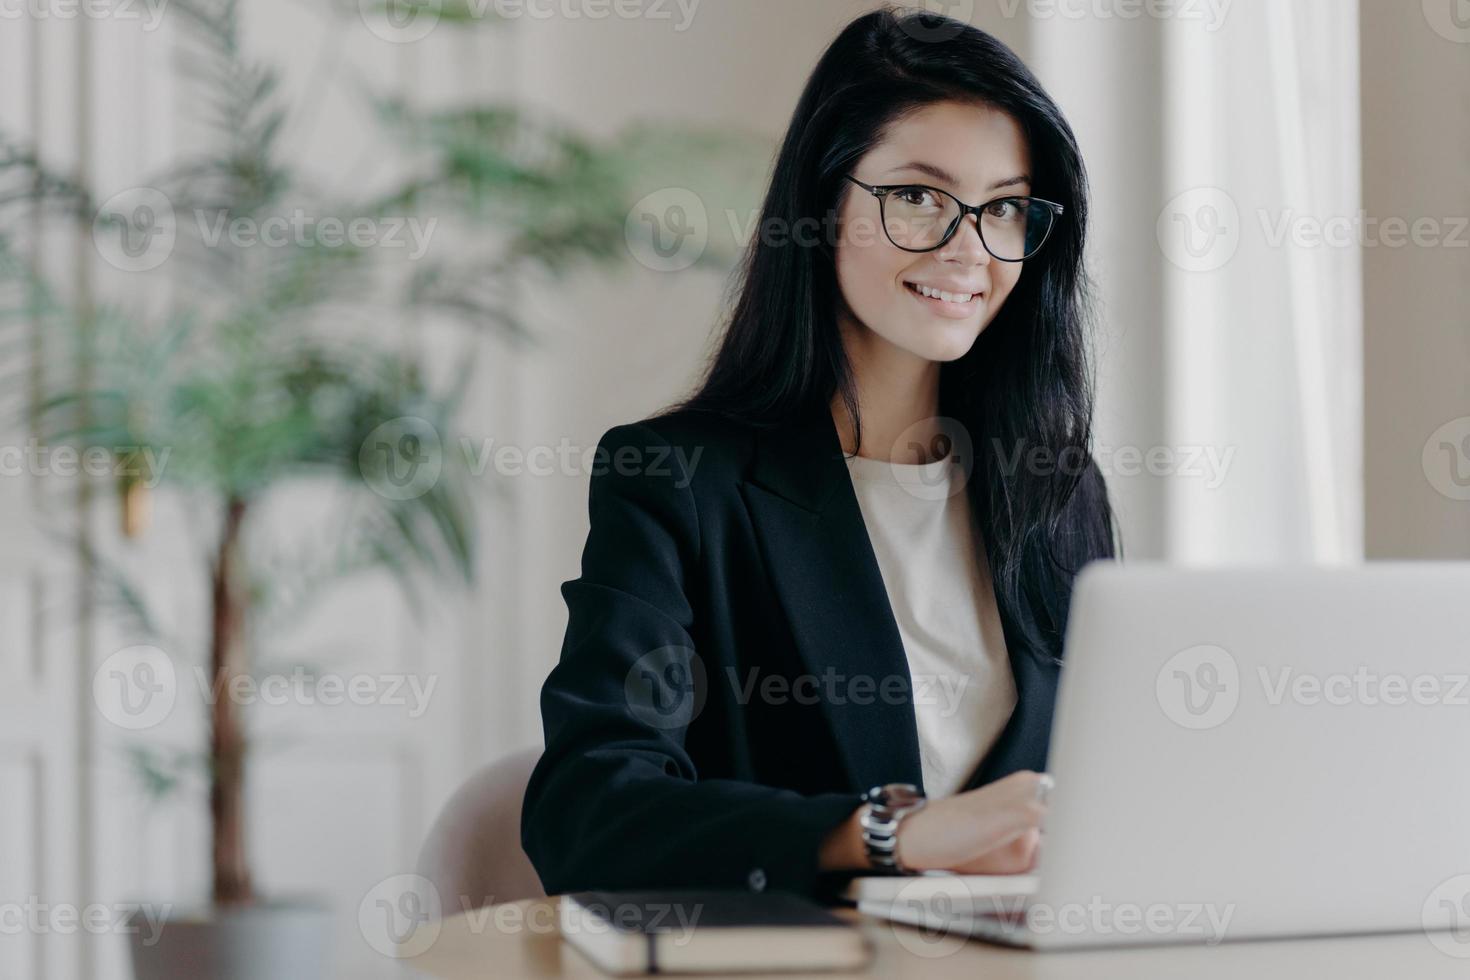 lächelnde, gut gekleidete junge sekretärin mit dunklen haaren, arbeitet am laptop am desktop, macht projekt- oder forschungsarbeit. Verkaufsleiter im modernen Büro, gemütlicher Arbeitsplatz. Remote-Job-Konzept foto